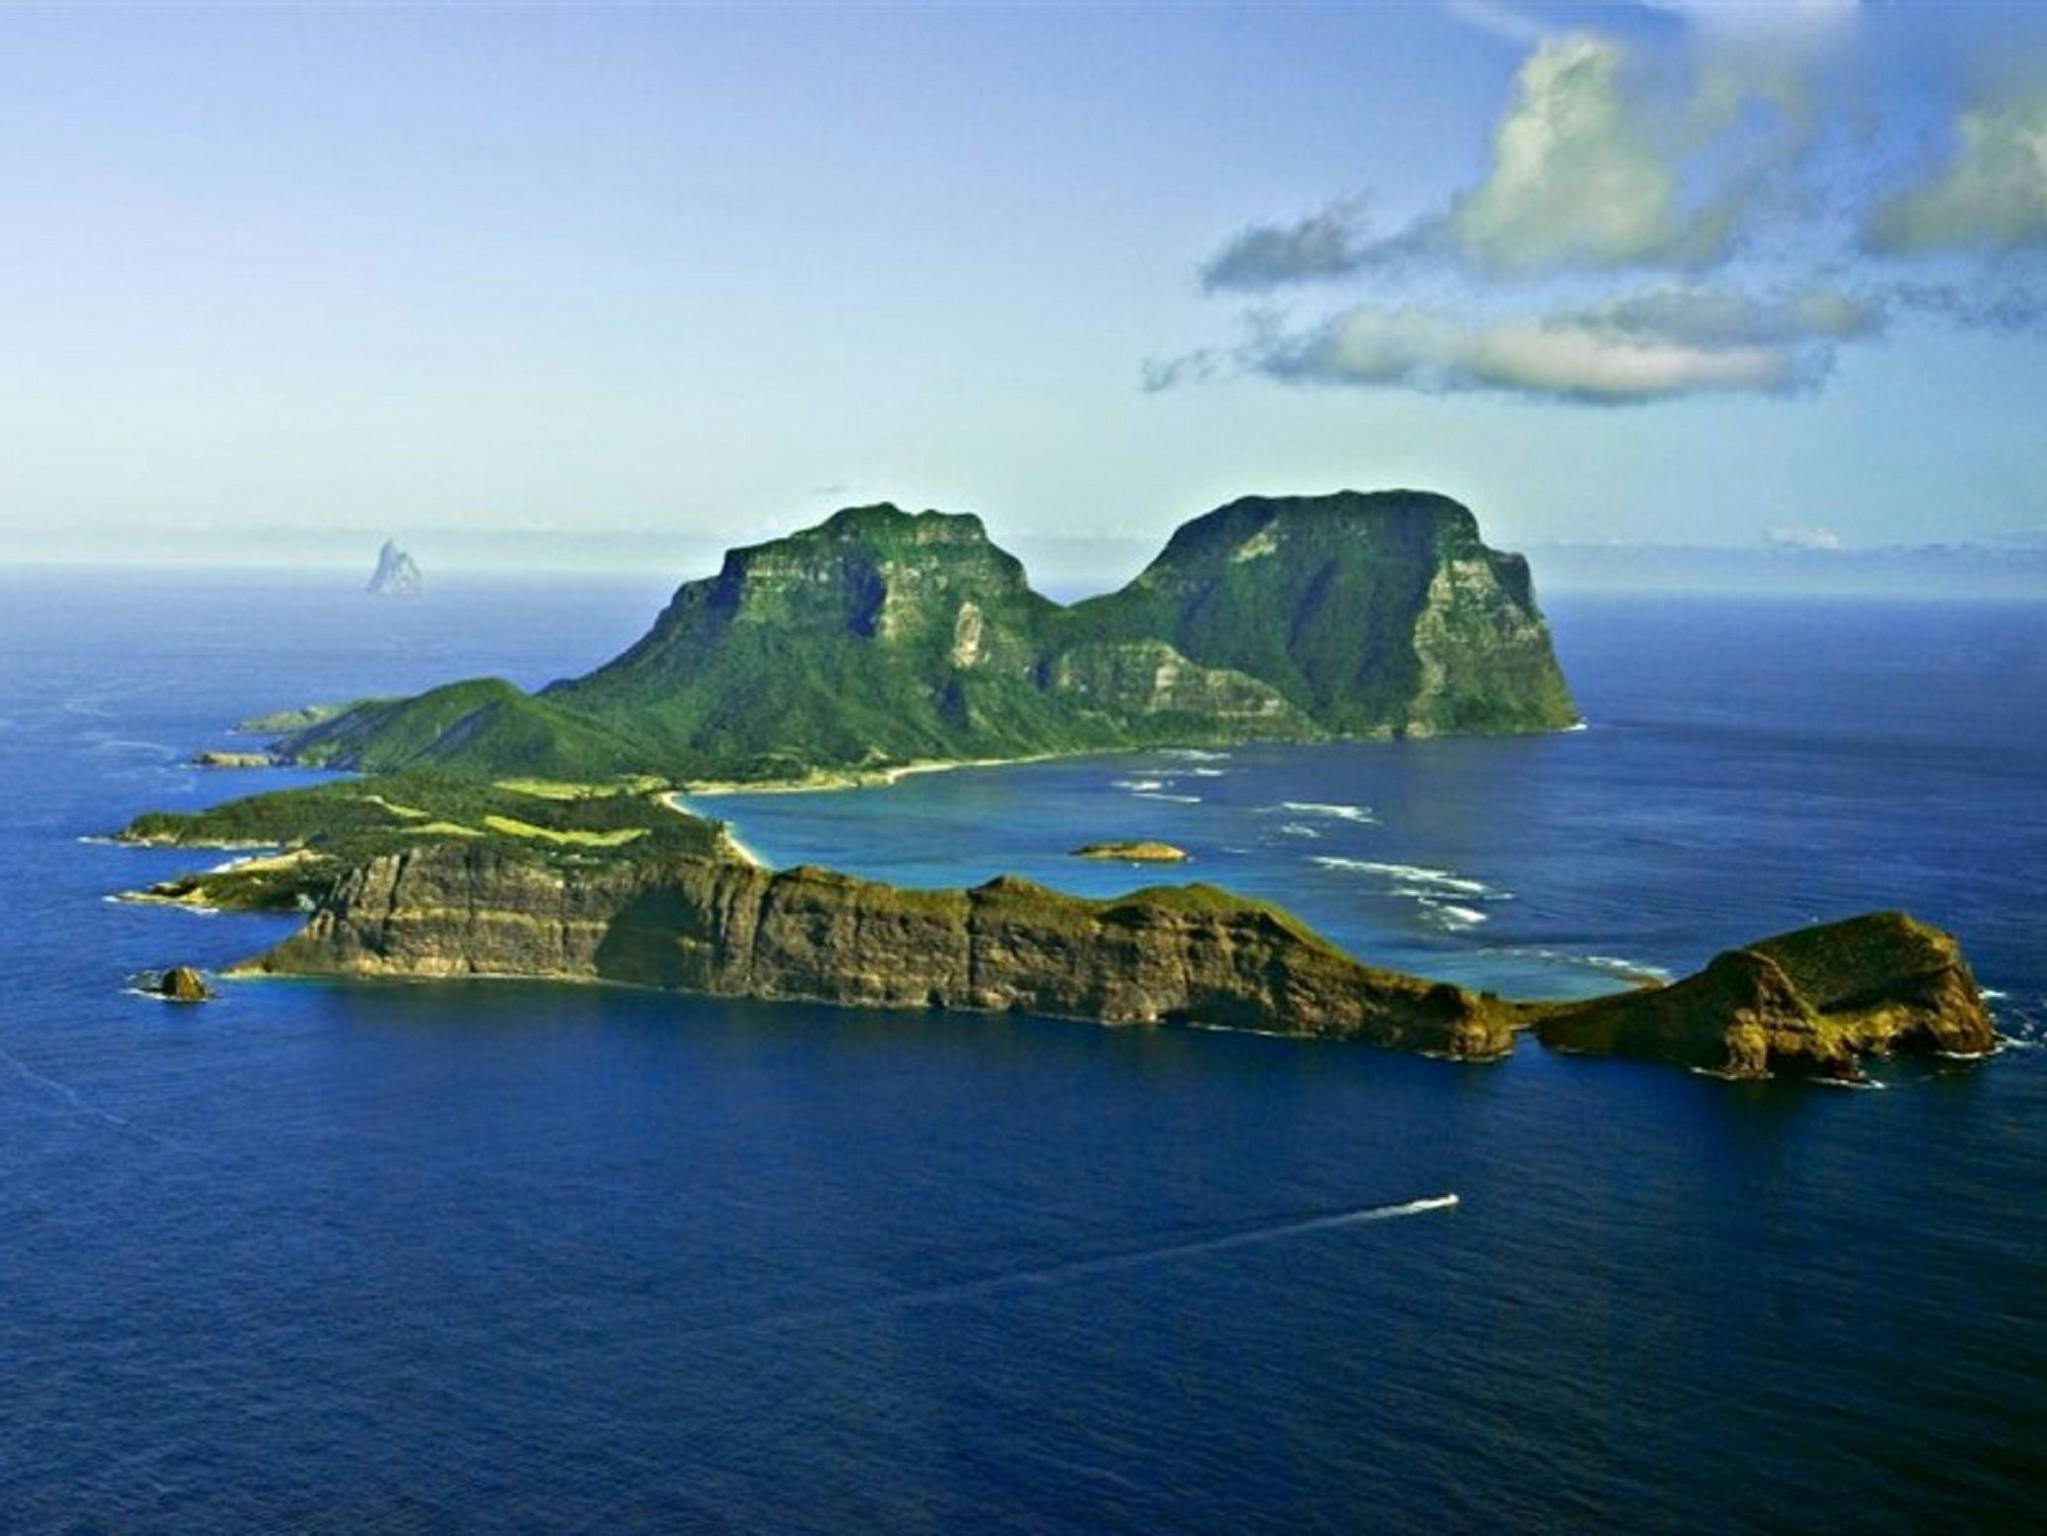 Marina islands